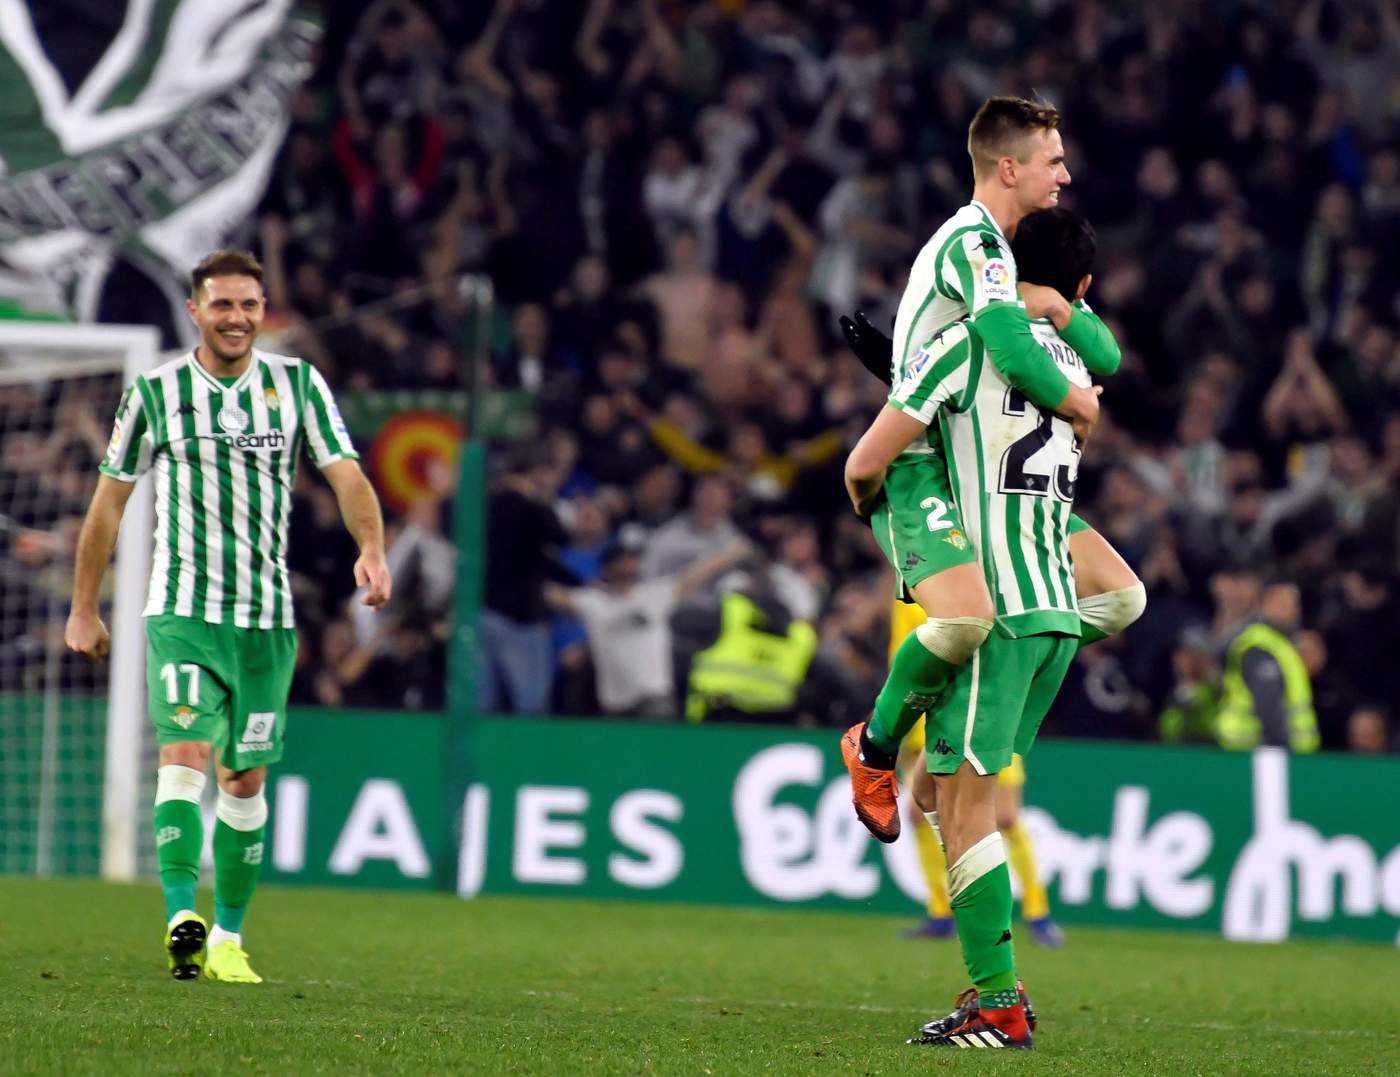 Real Betis avanza tras vencer al Espanyol